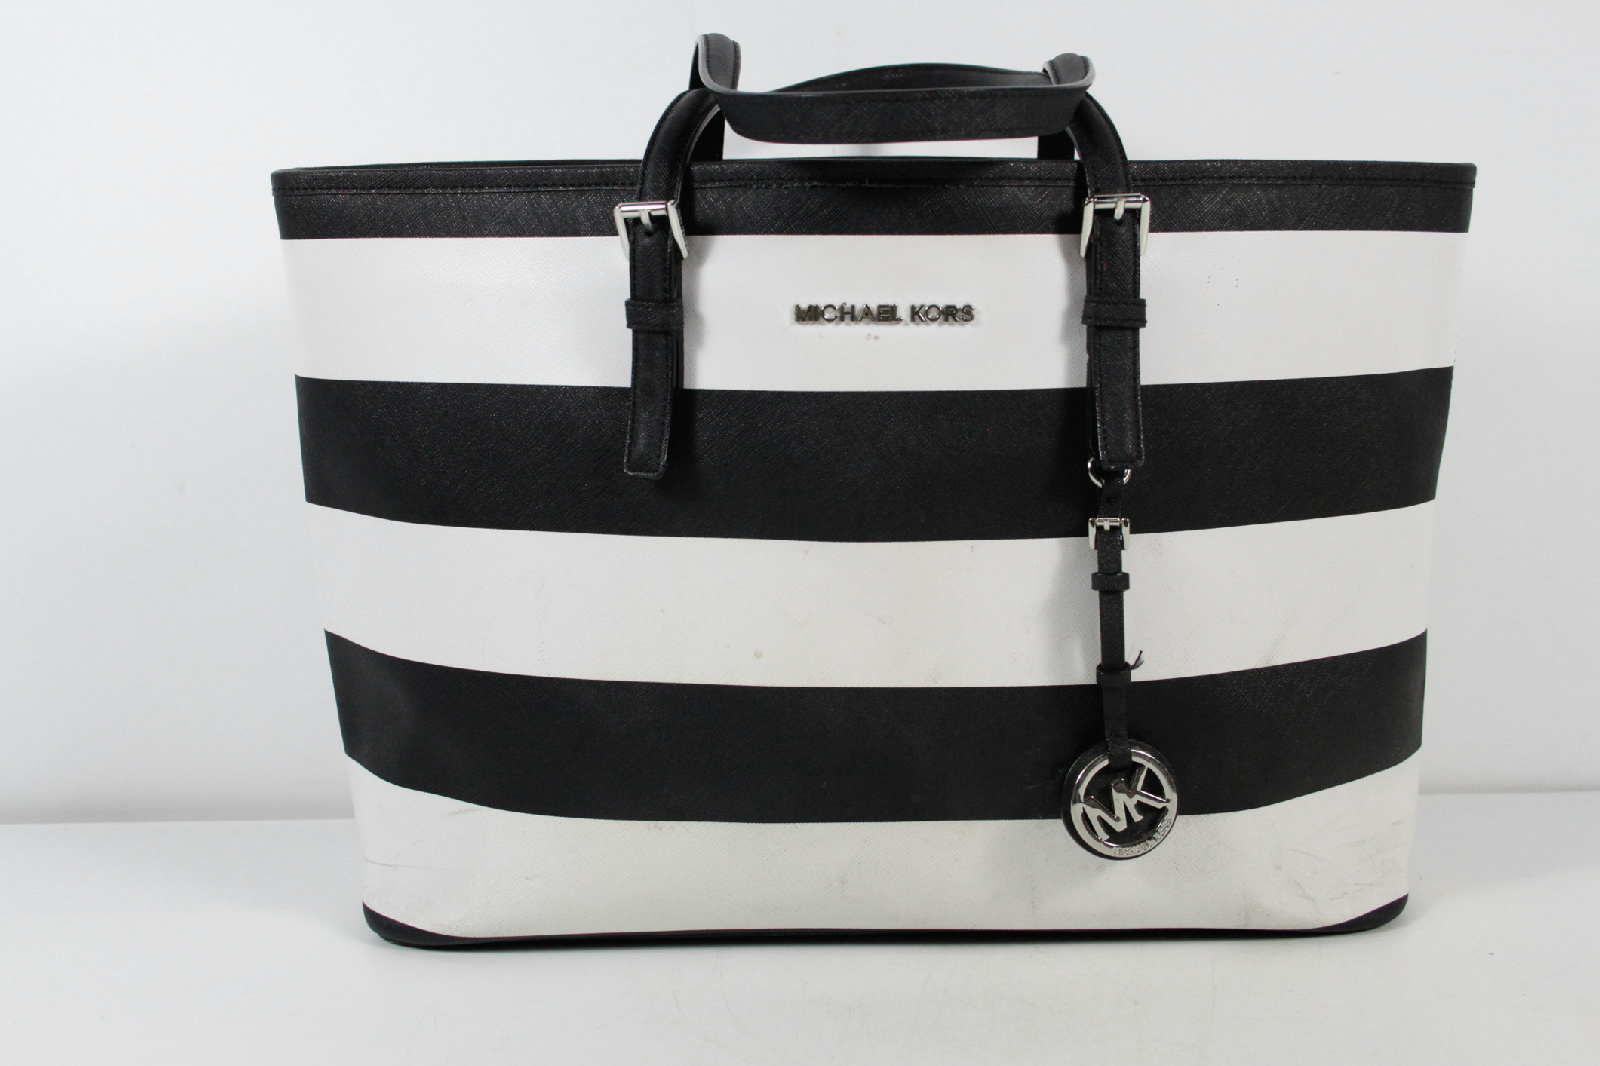 Michael Kors Black White Striped Large Tote Bag